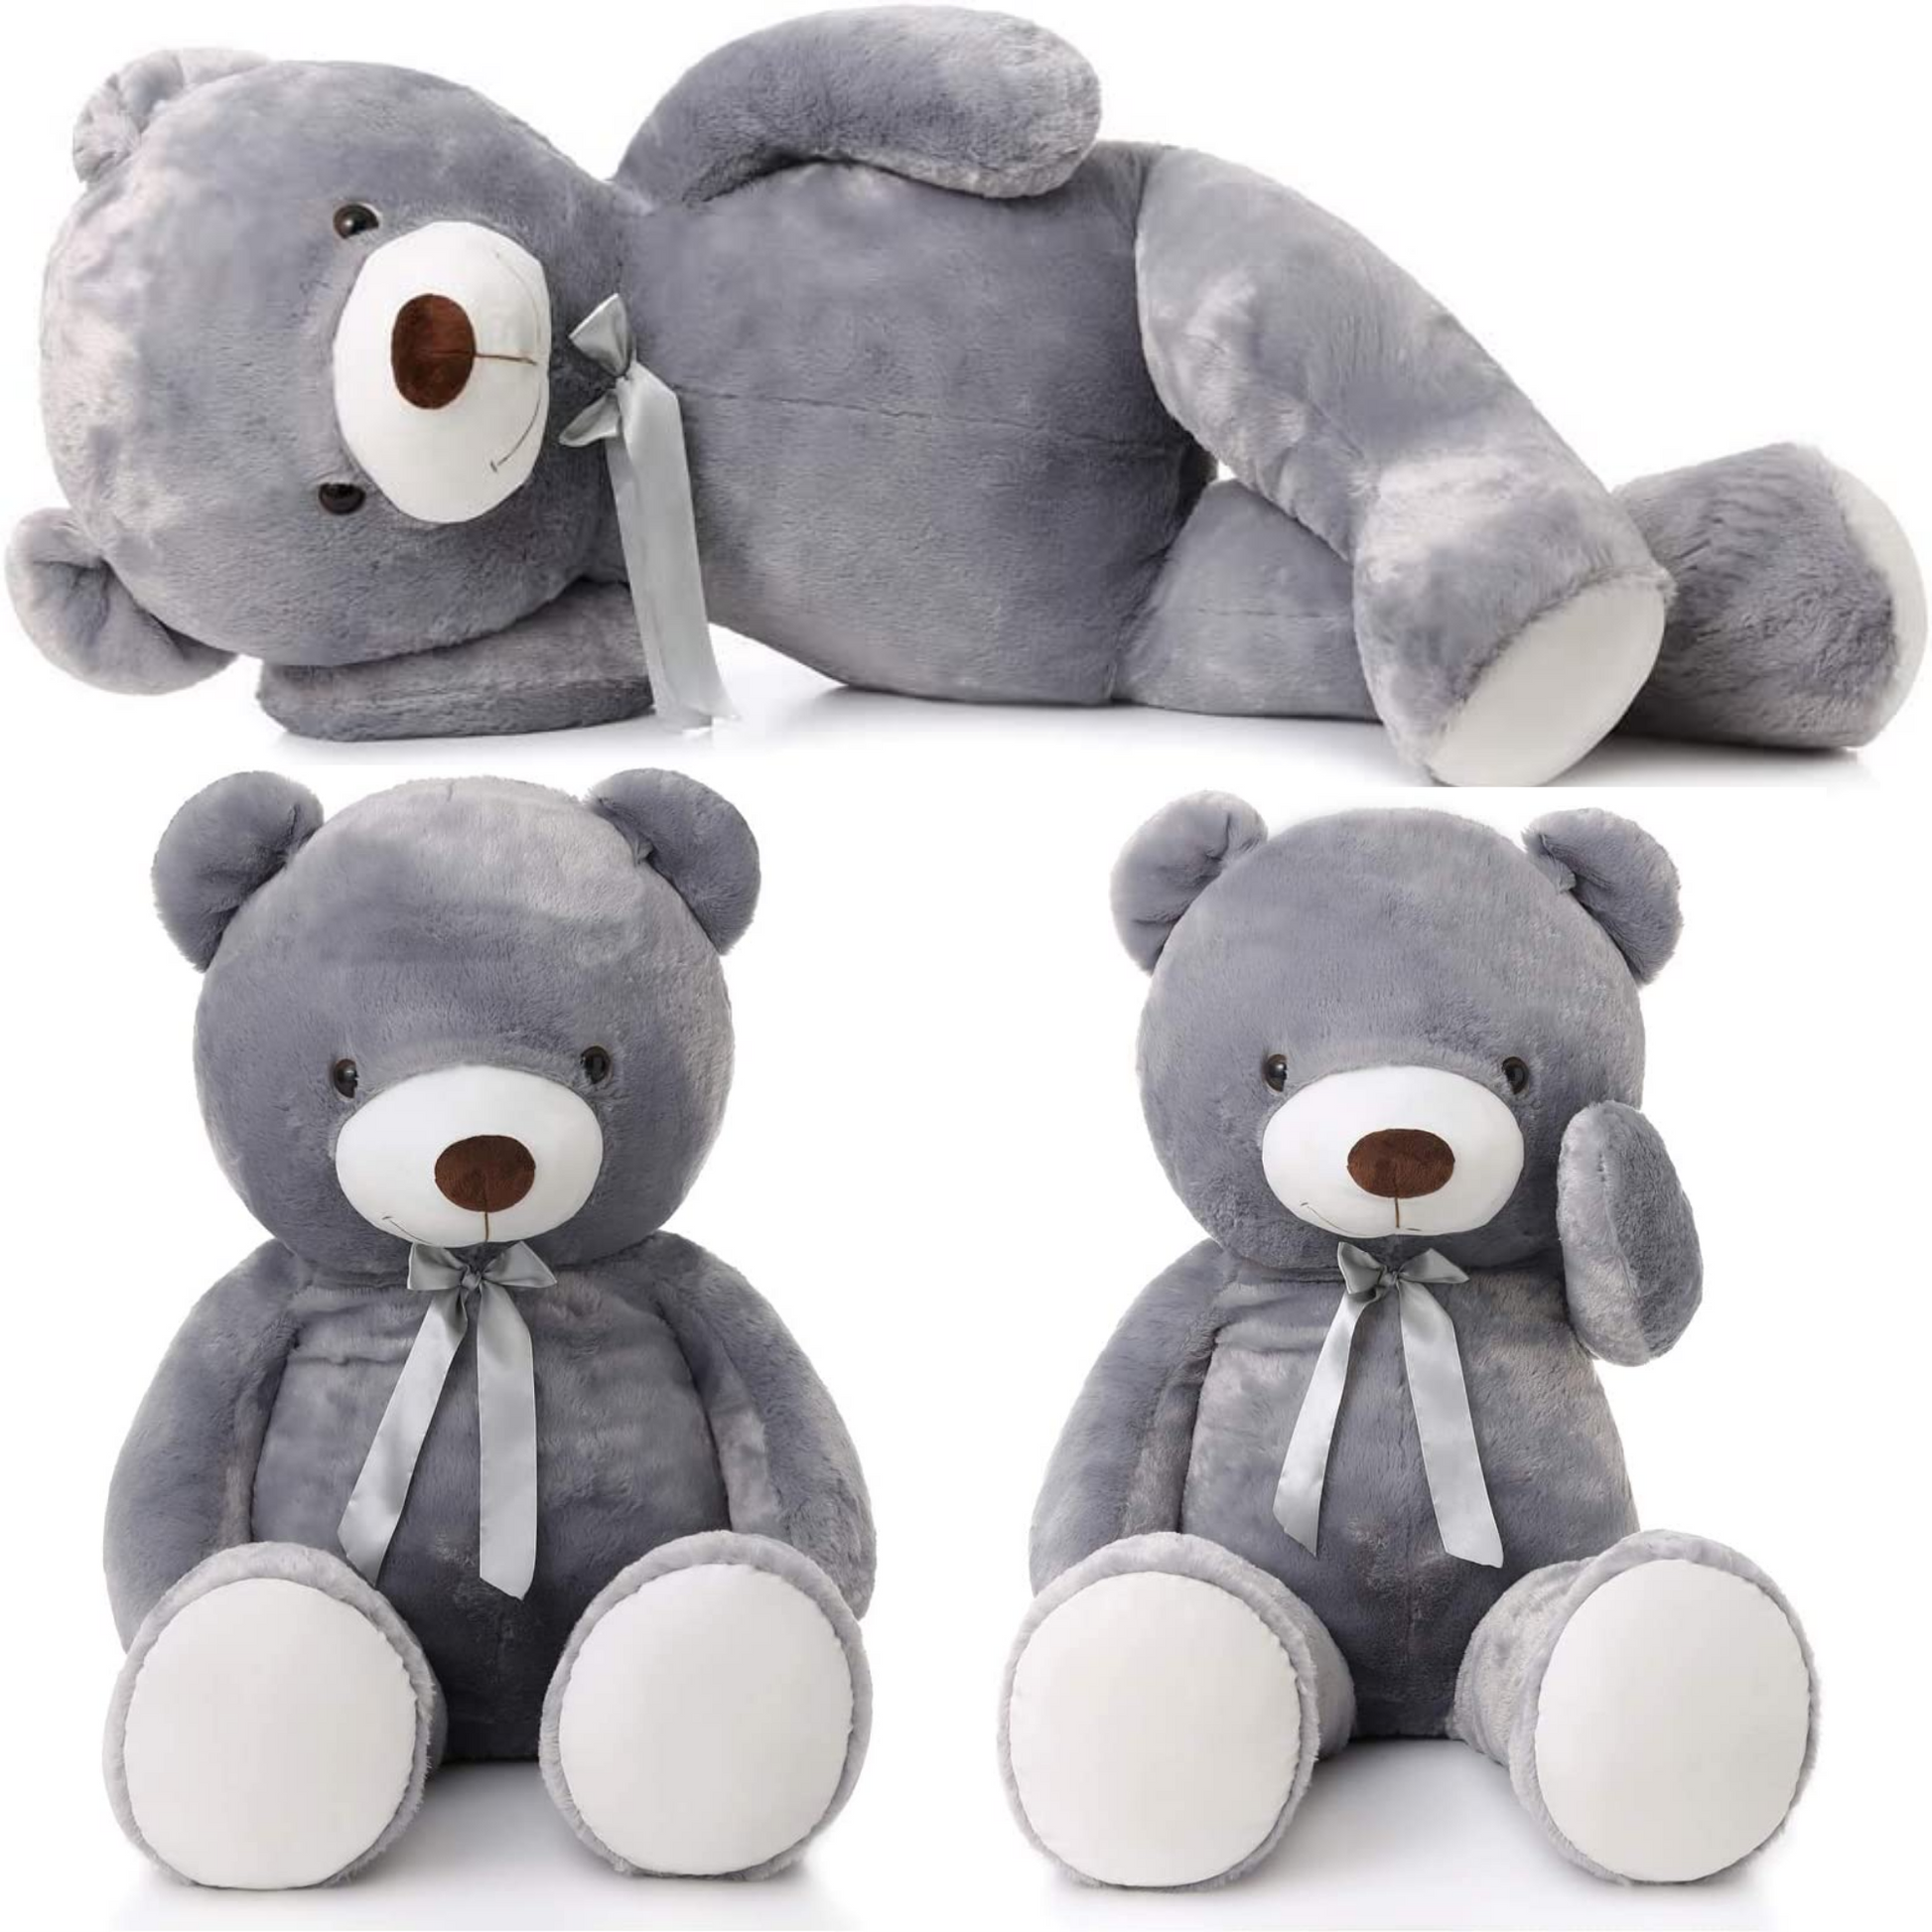 Giant Teddy Bear Stuffed Toy, 47 inch, Grey